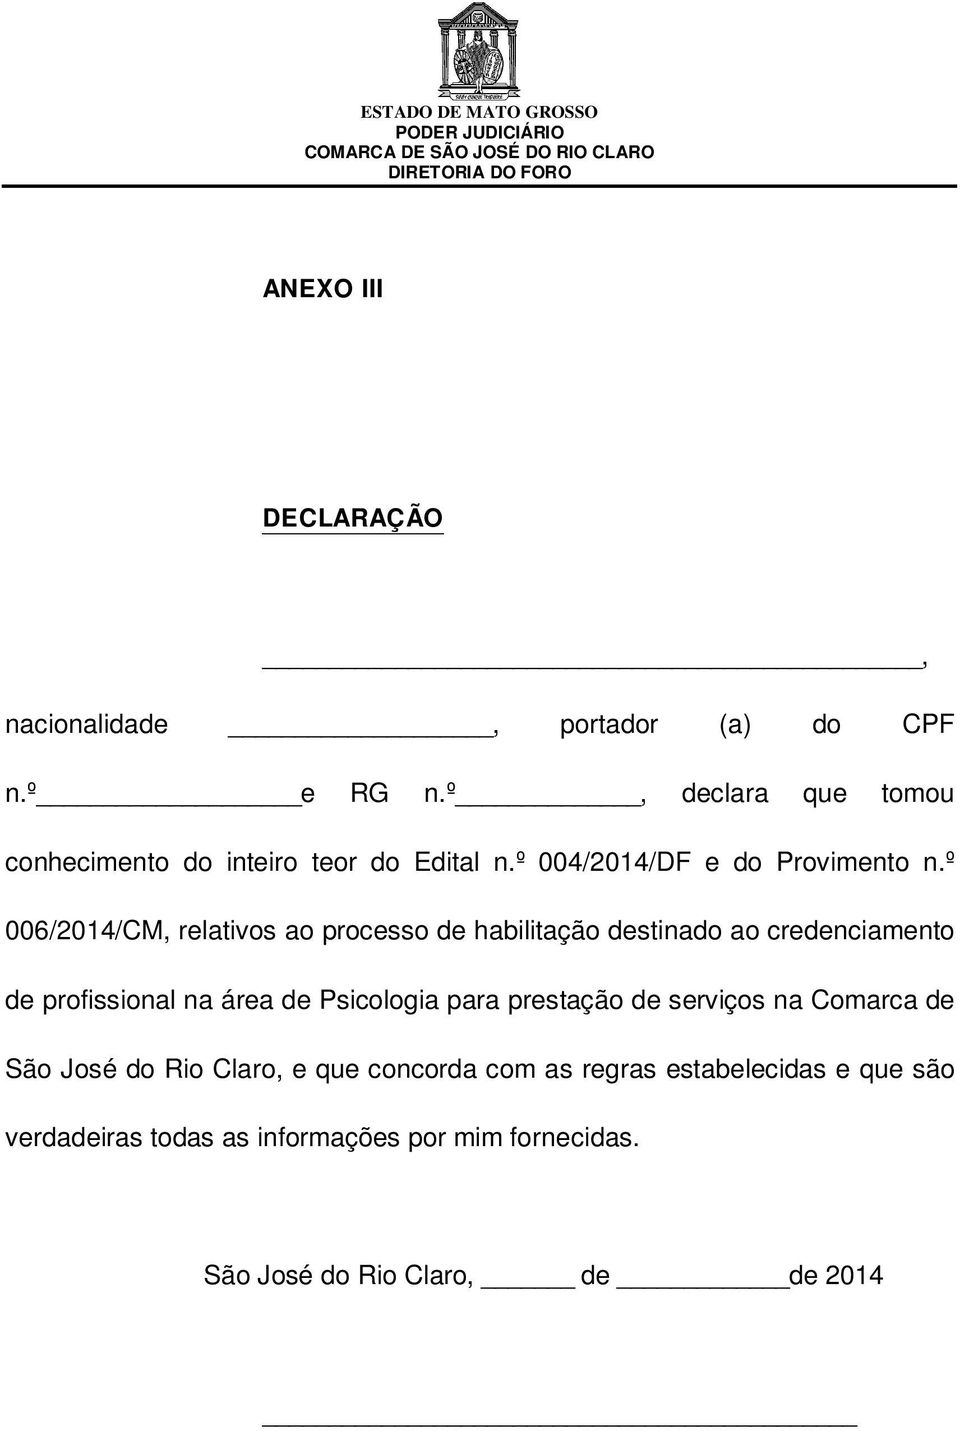 º 006/2014/CM, relativos ao processo de habilitação destinado ao credenciamento de profissional na área de Psicologia